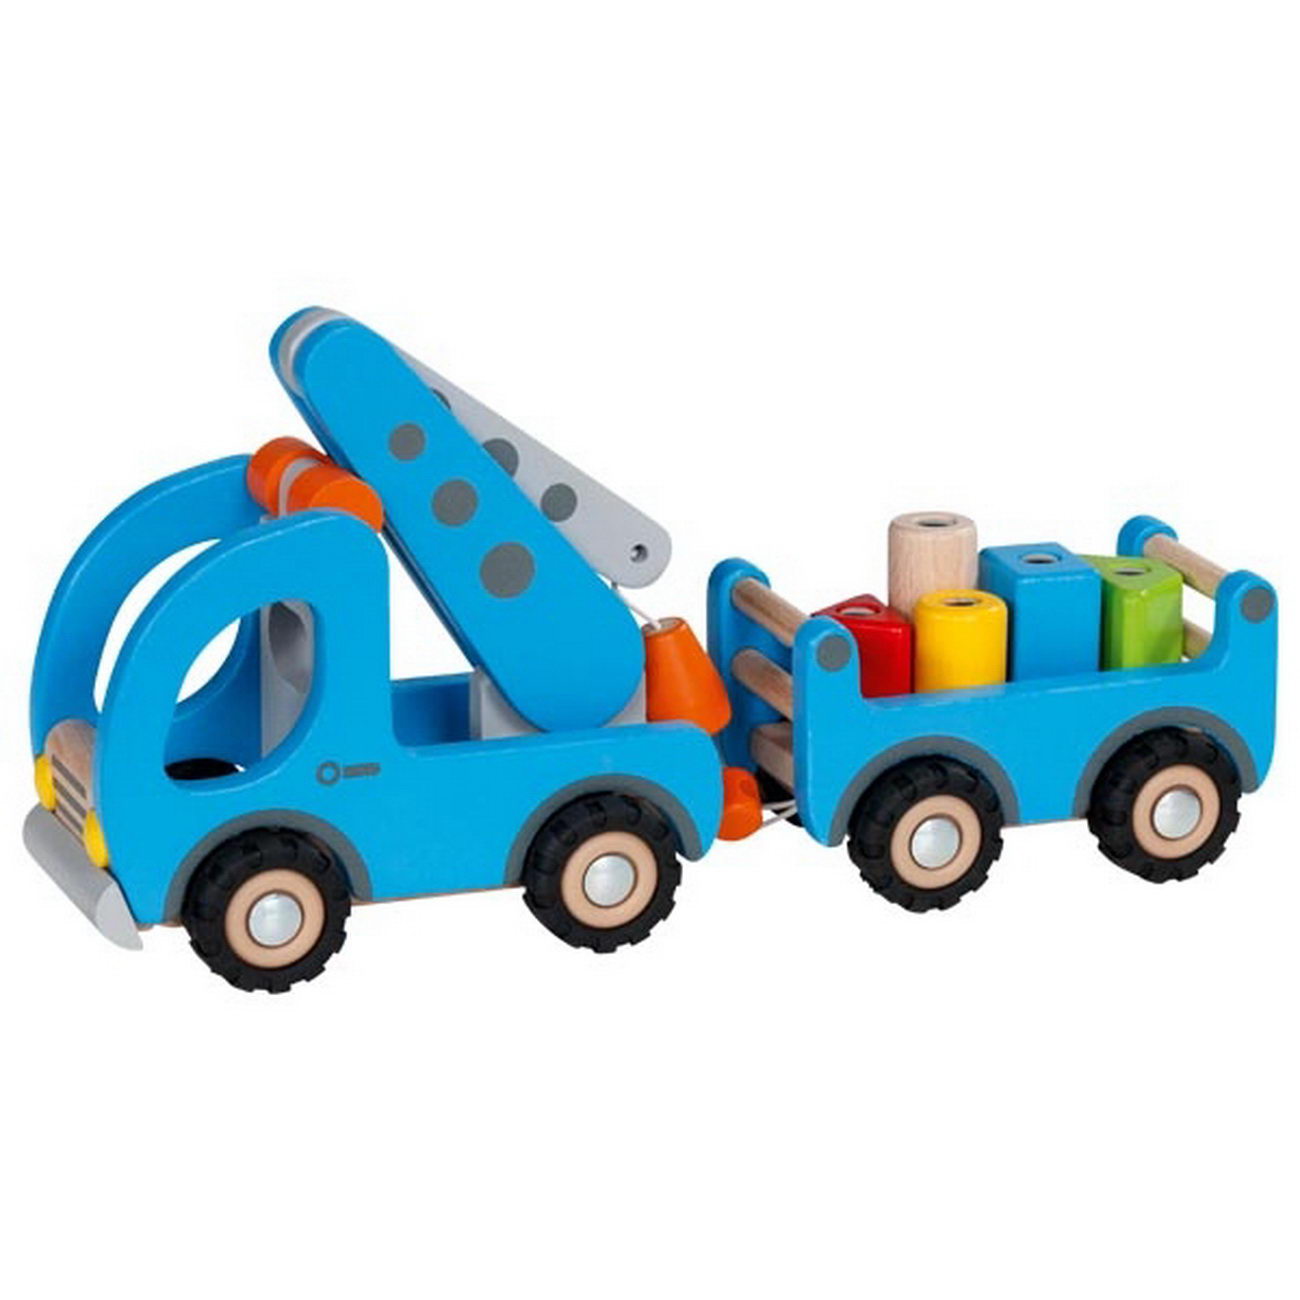 Kranwagen mit Anhänger (55875)